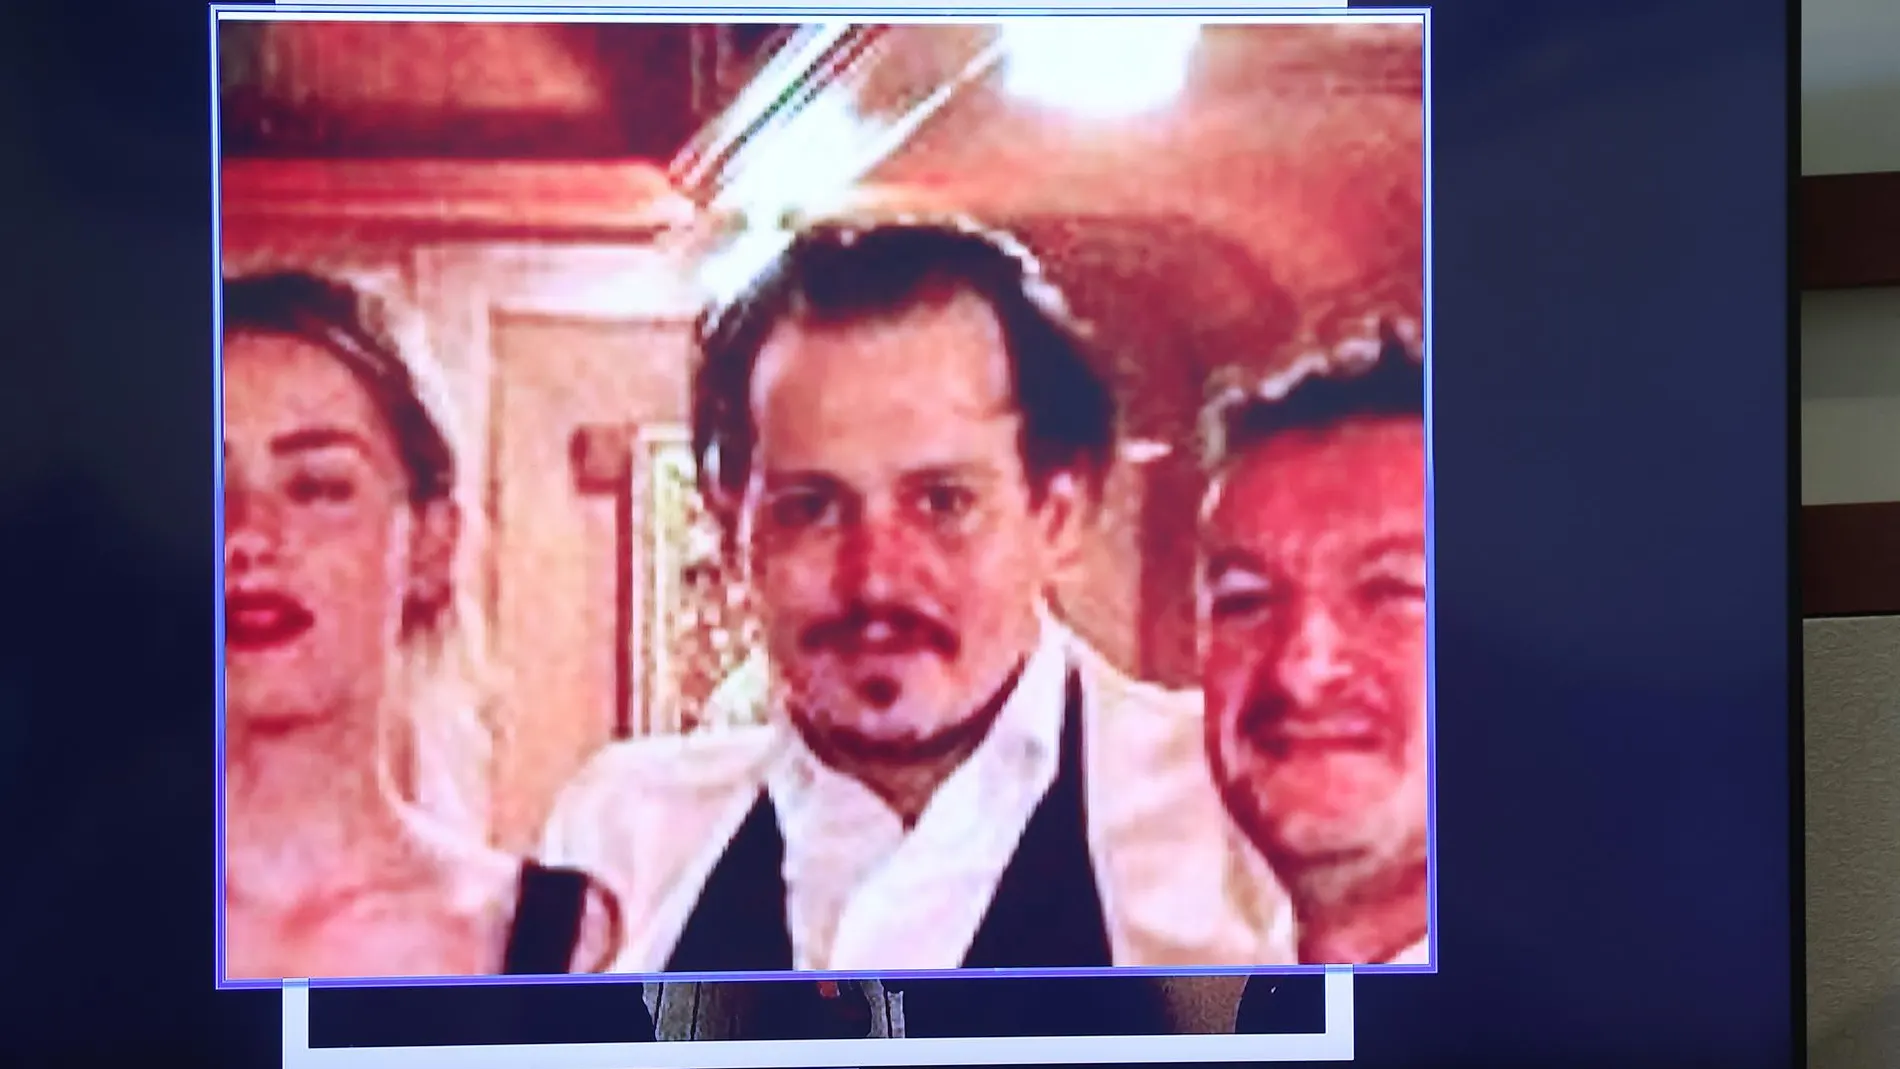 Revelan imágenes de heridas y moratones de Johnny Depp durante su luna de miel con Amber Heard